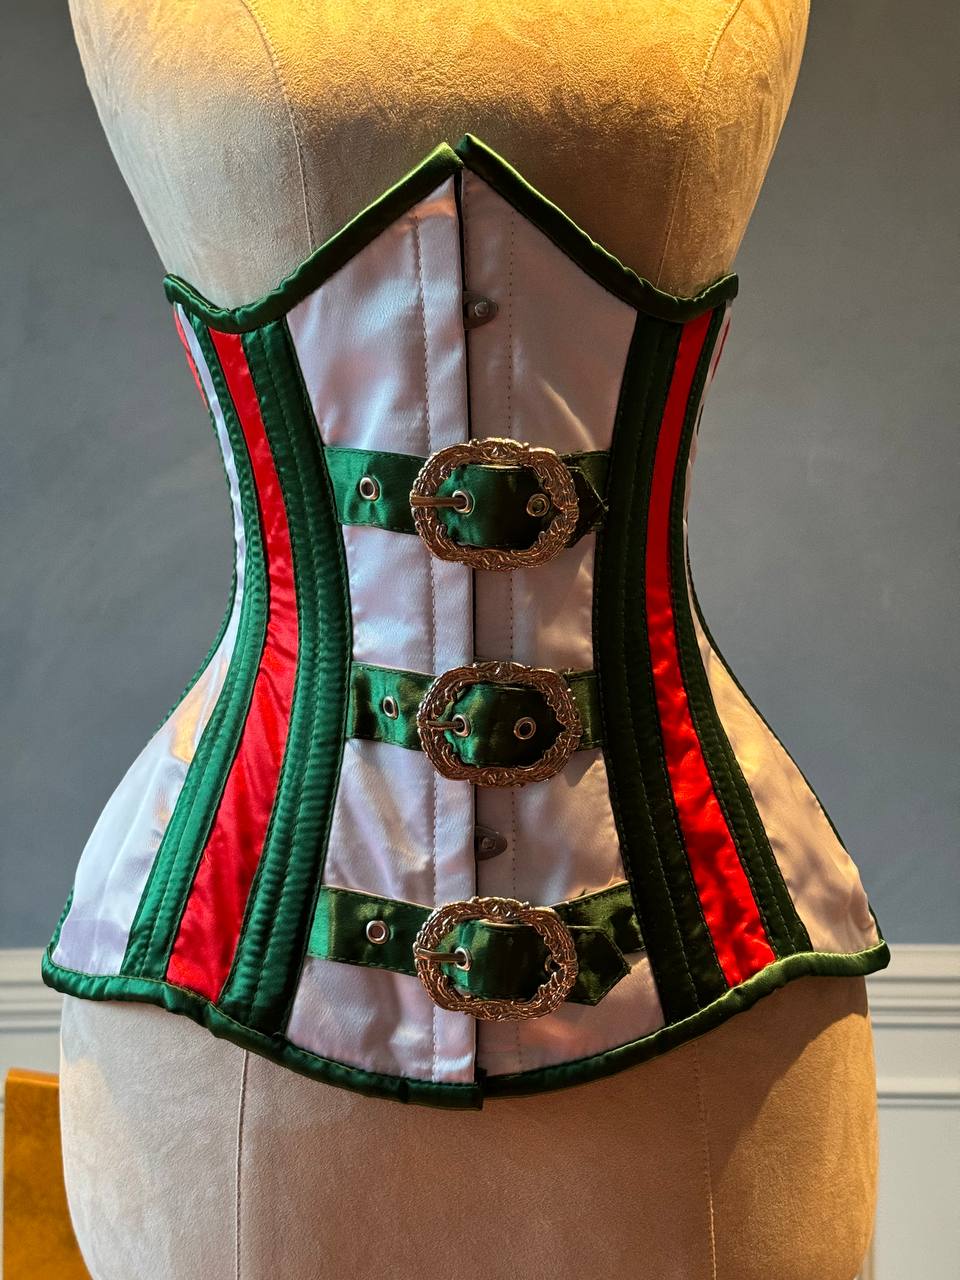 
                  
                    Corset sottoseno rosso e verde in raso in stile Santa con chiusure steampunk davanti. Il corsetto è realizzato personalmente secondo le tue misure.
                  
                